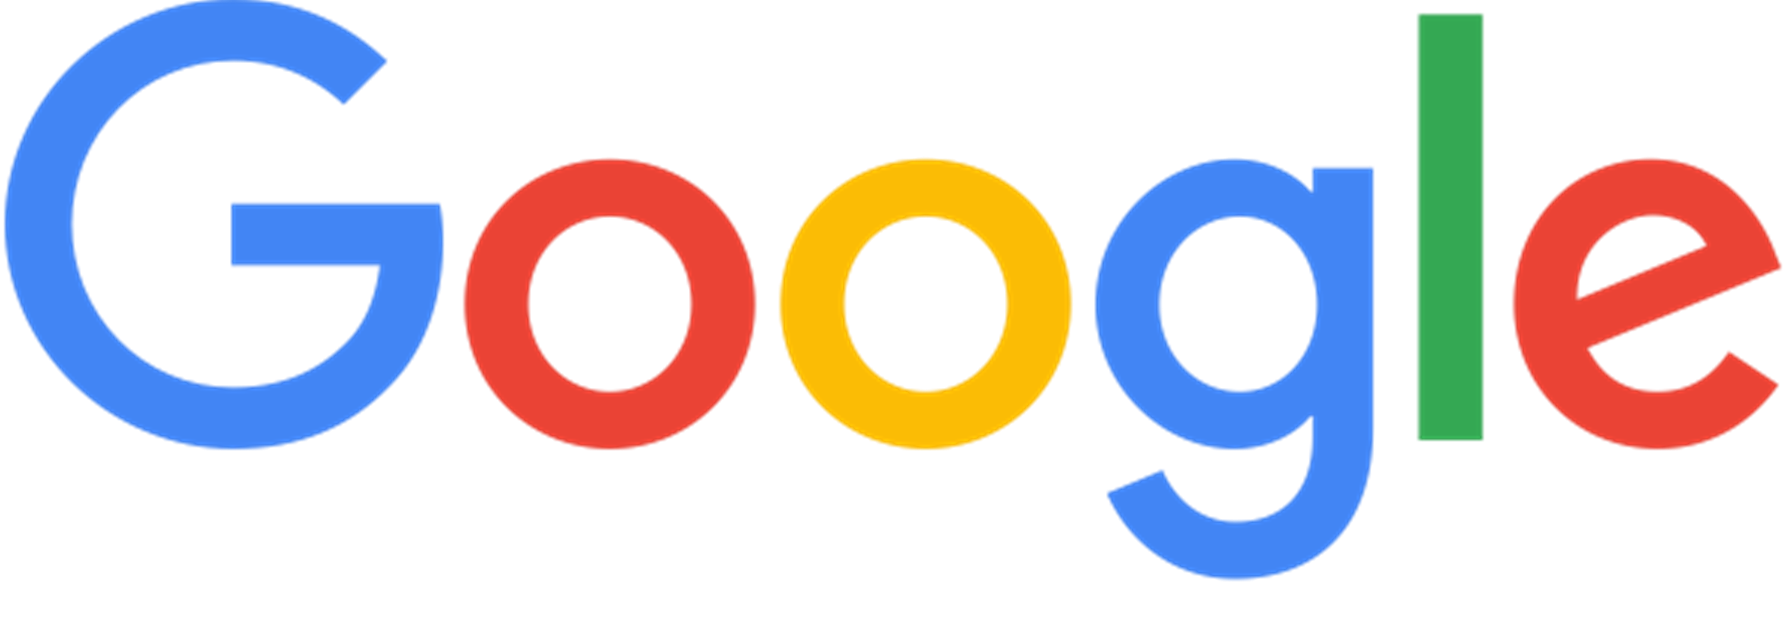 el nuevo logotipo de google